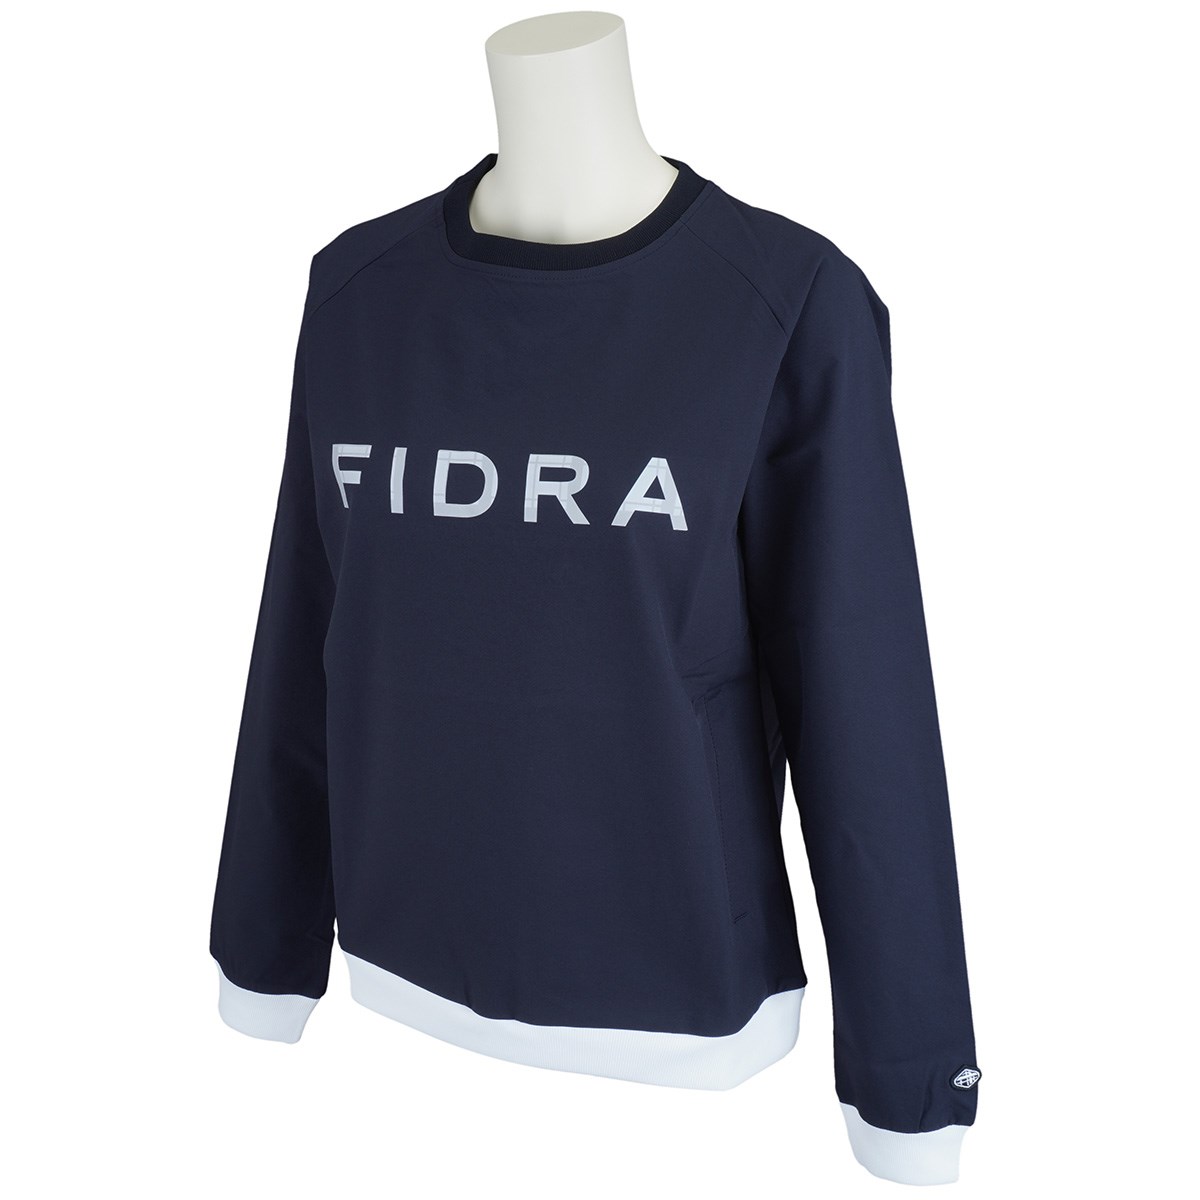 [アウトレット] [在庫限りのお買い得商品] フィドラ FIDRA 撥水ストレッチウインドプルオーバー ネイビー レディース ゴルフウェア